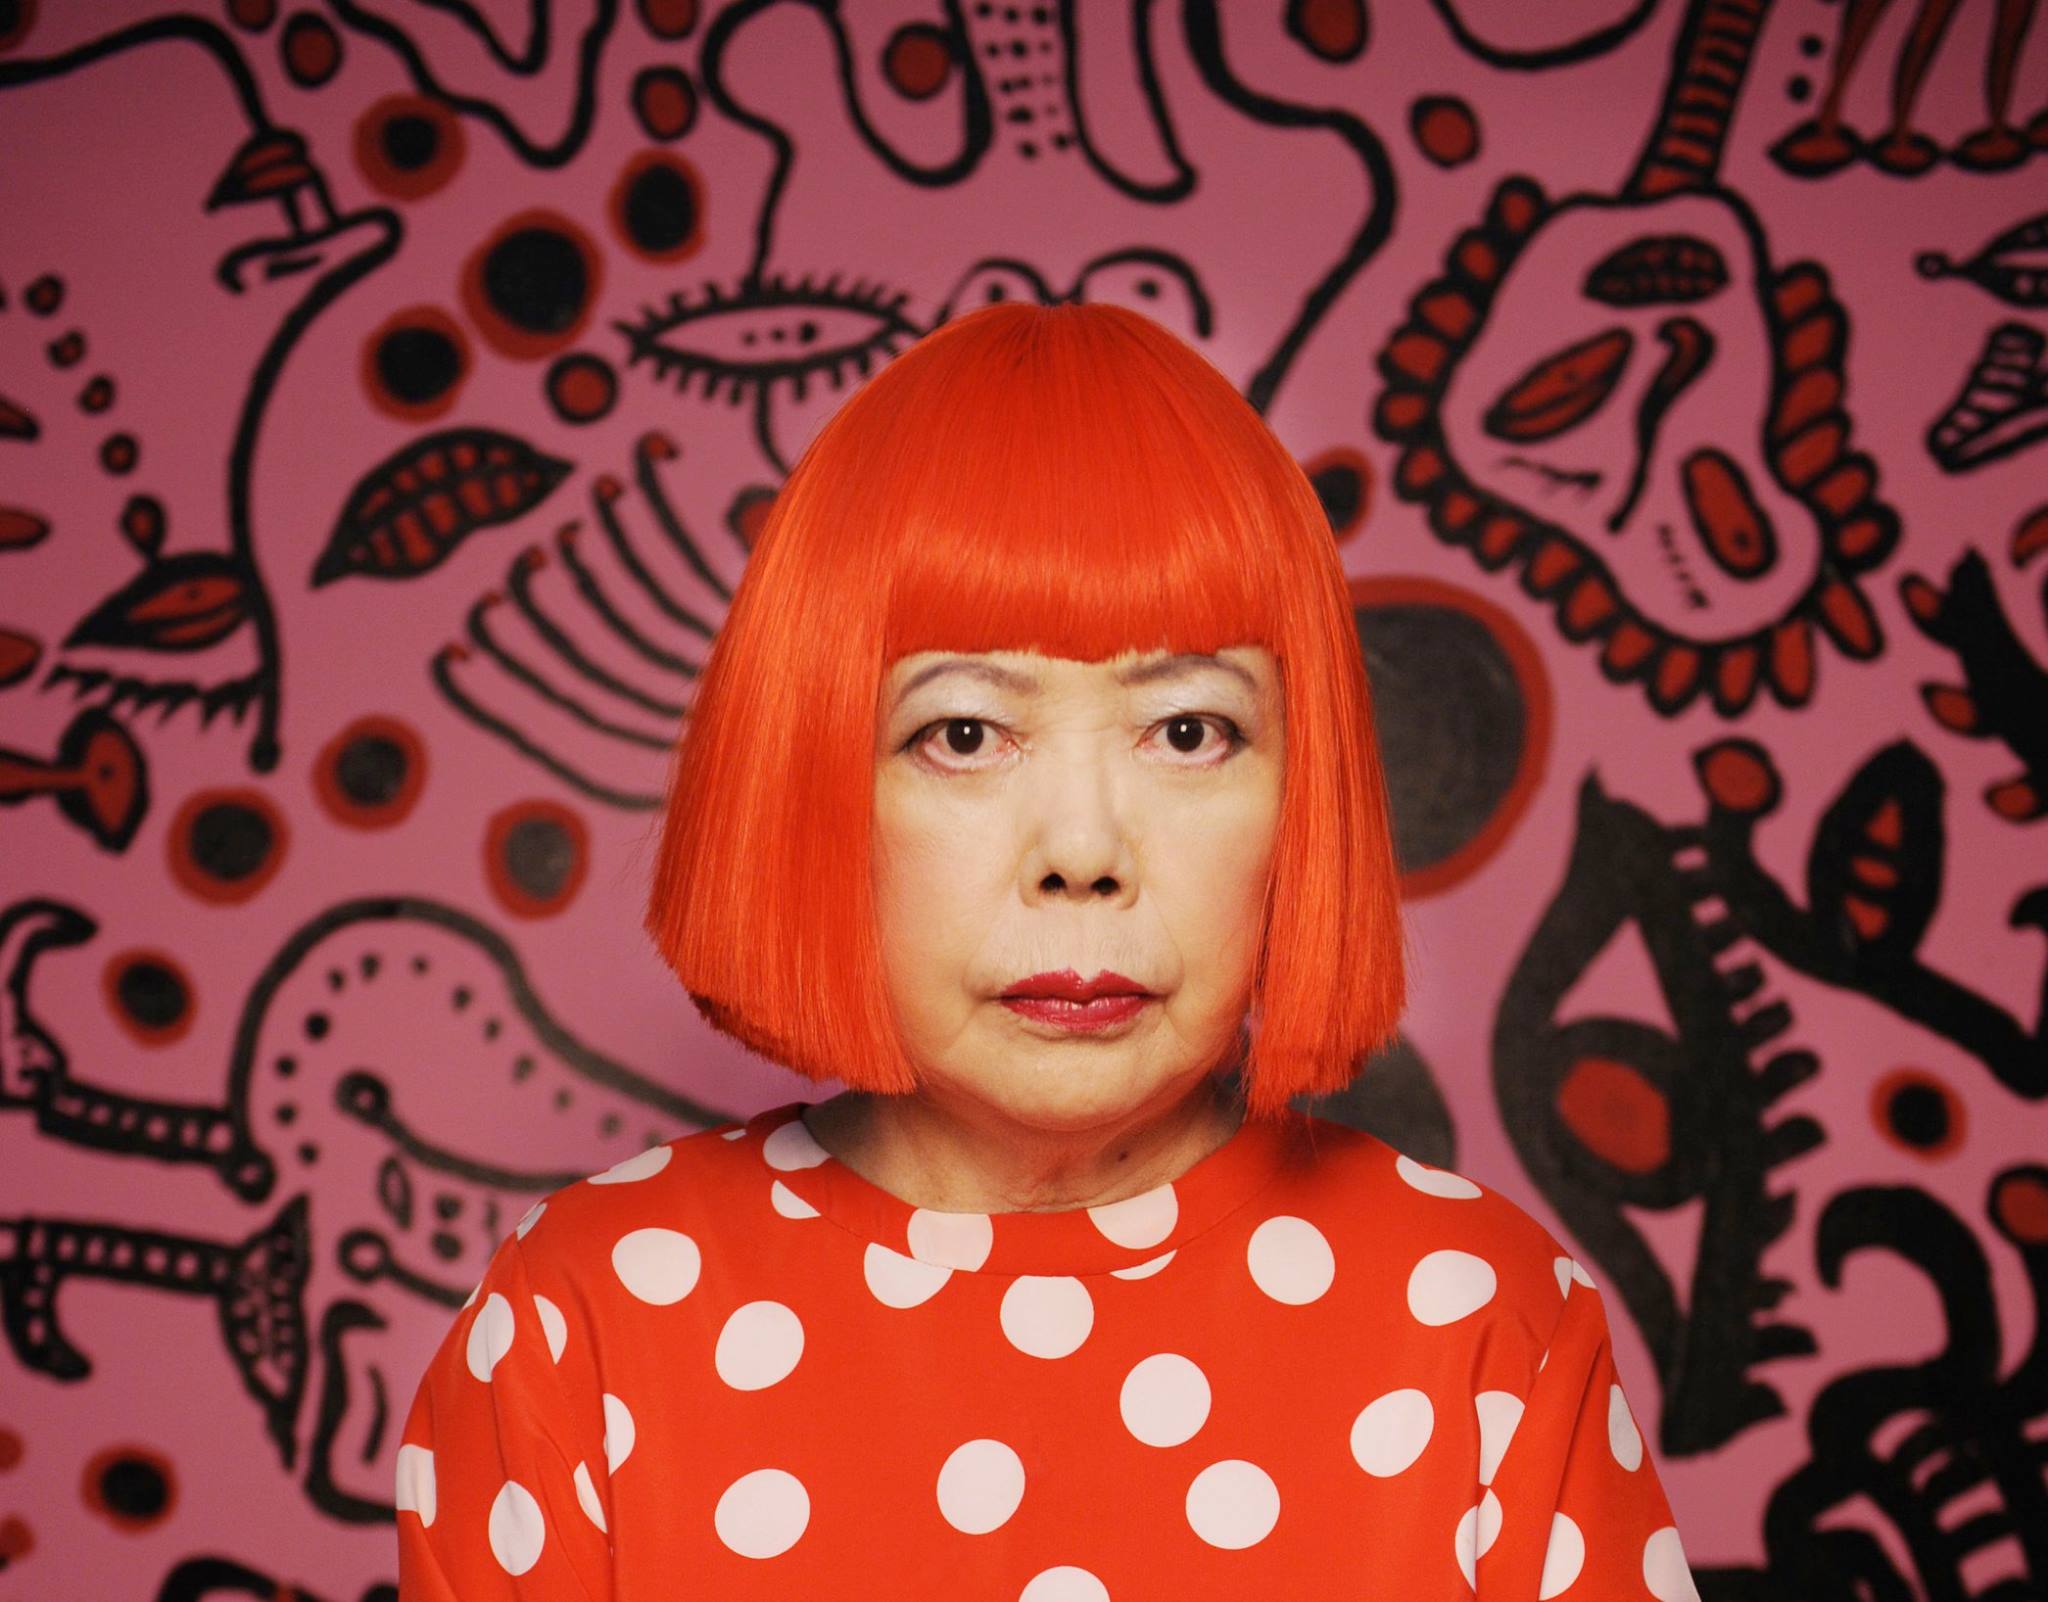 Asian contemporary artists Yayoi Kusama